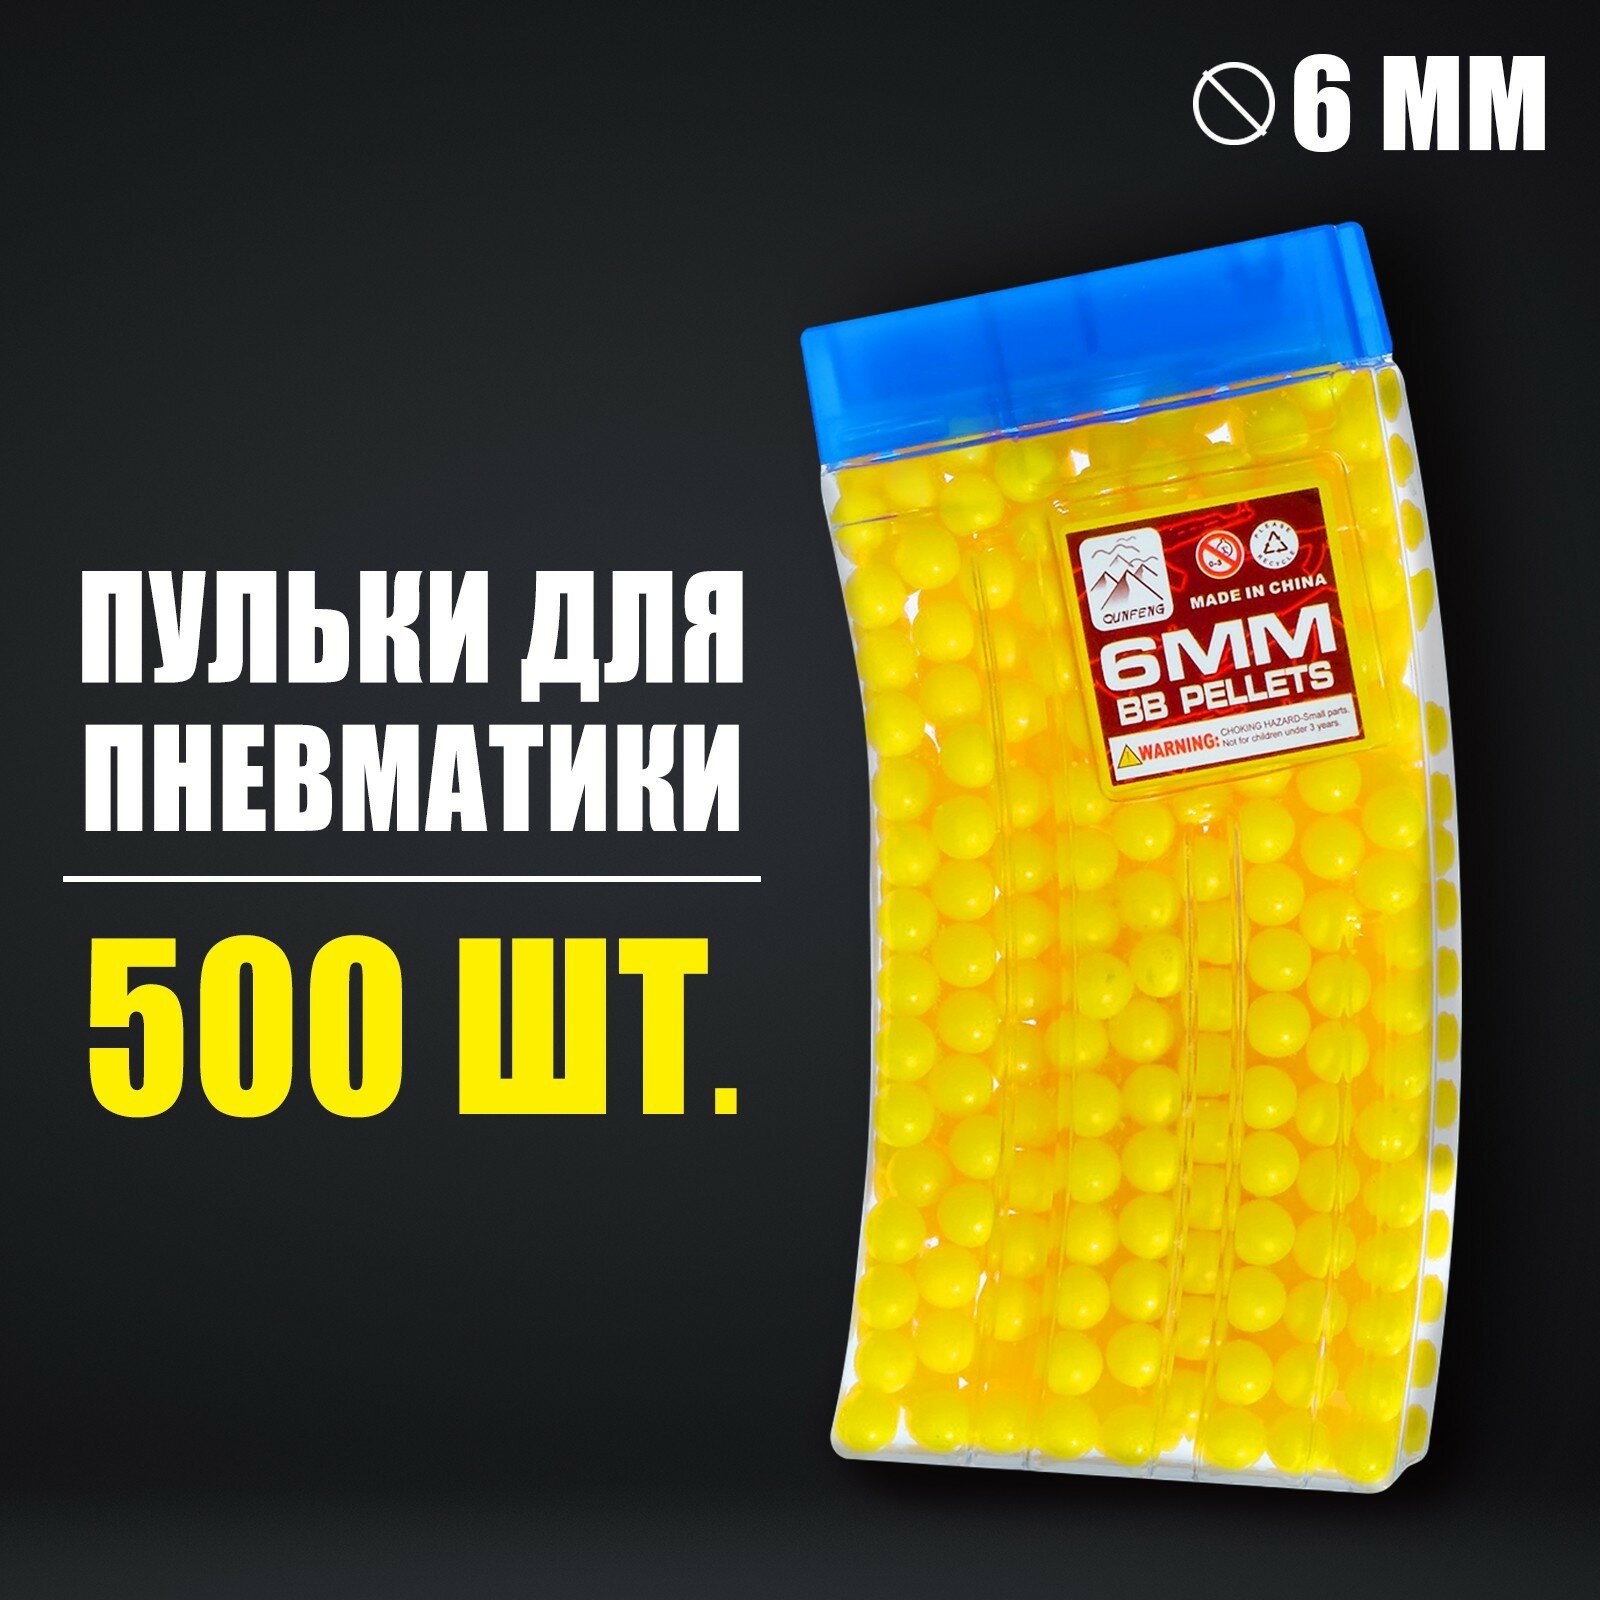 Пульки 6 мм в рожке, 500 шт, цвет жёлтый (1шт.)